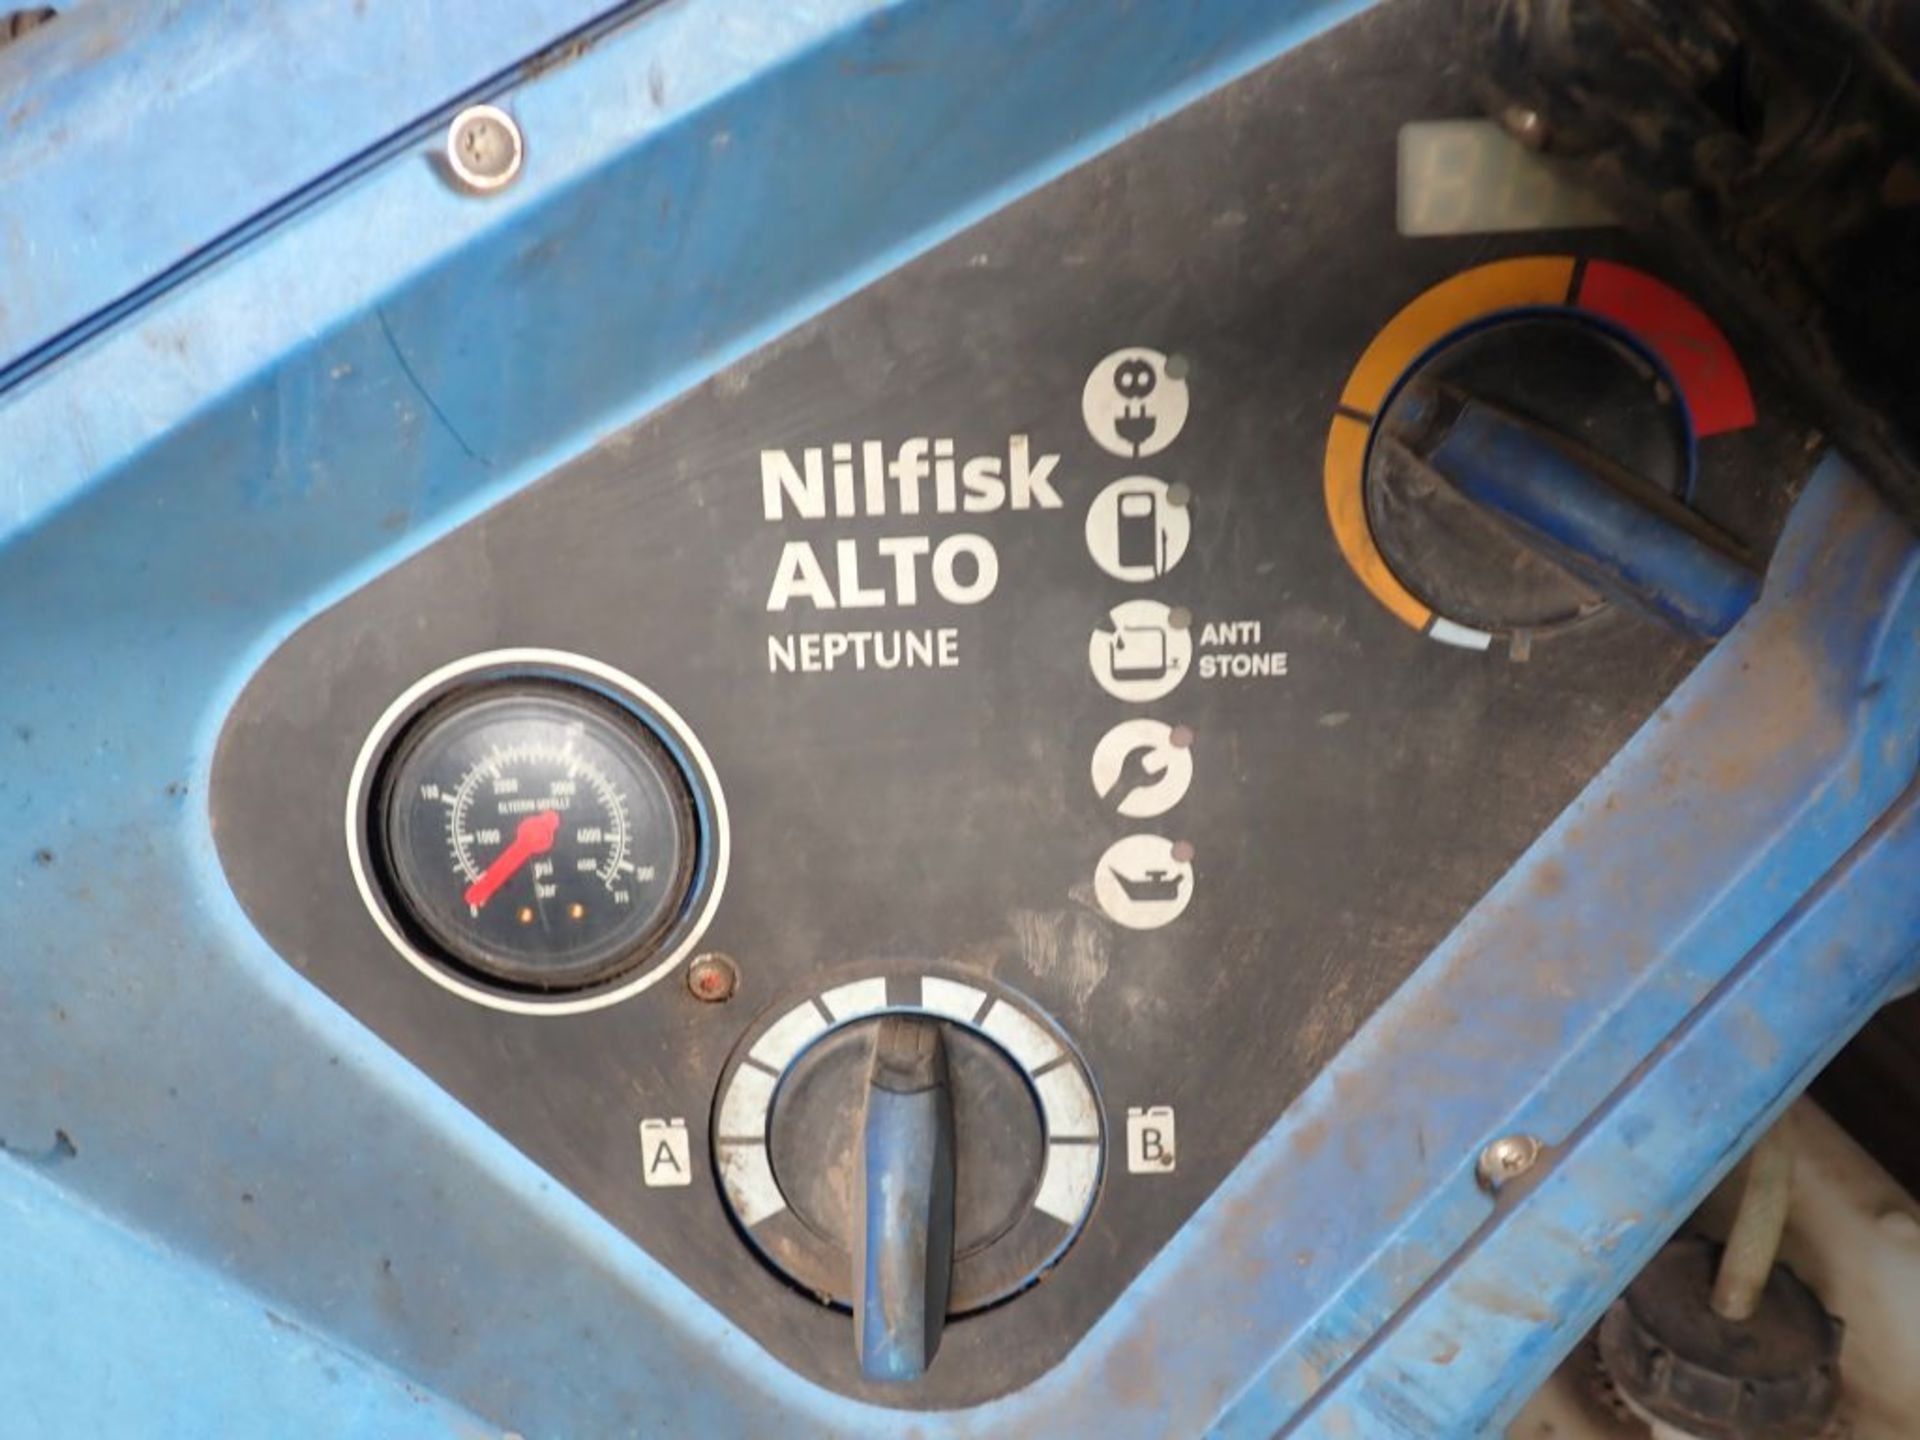 Nilfisk Alto Neptune 5-Steam Cleaner - Image 5 of 9